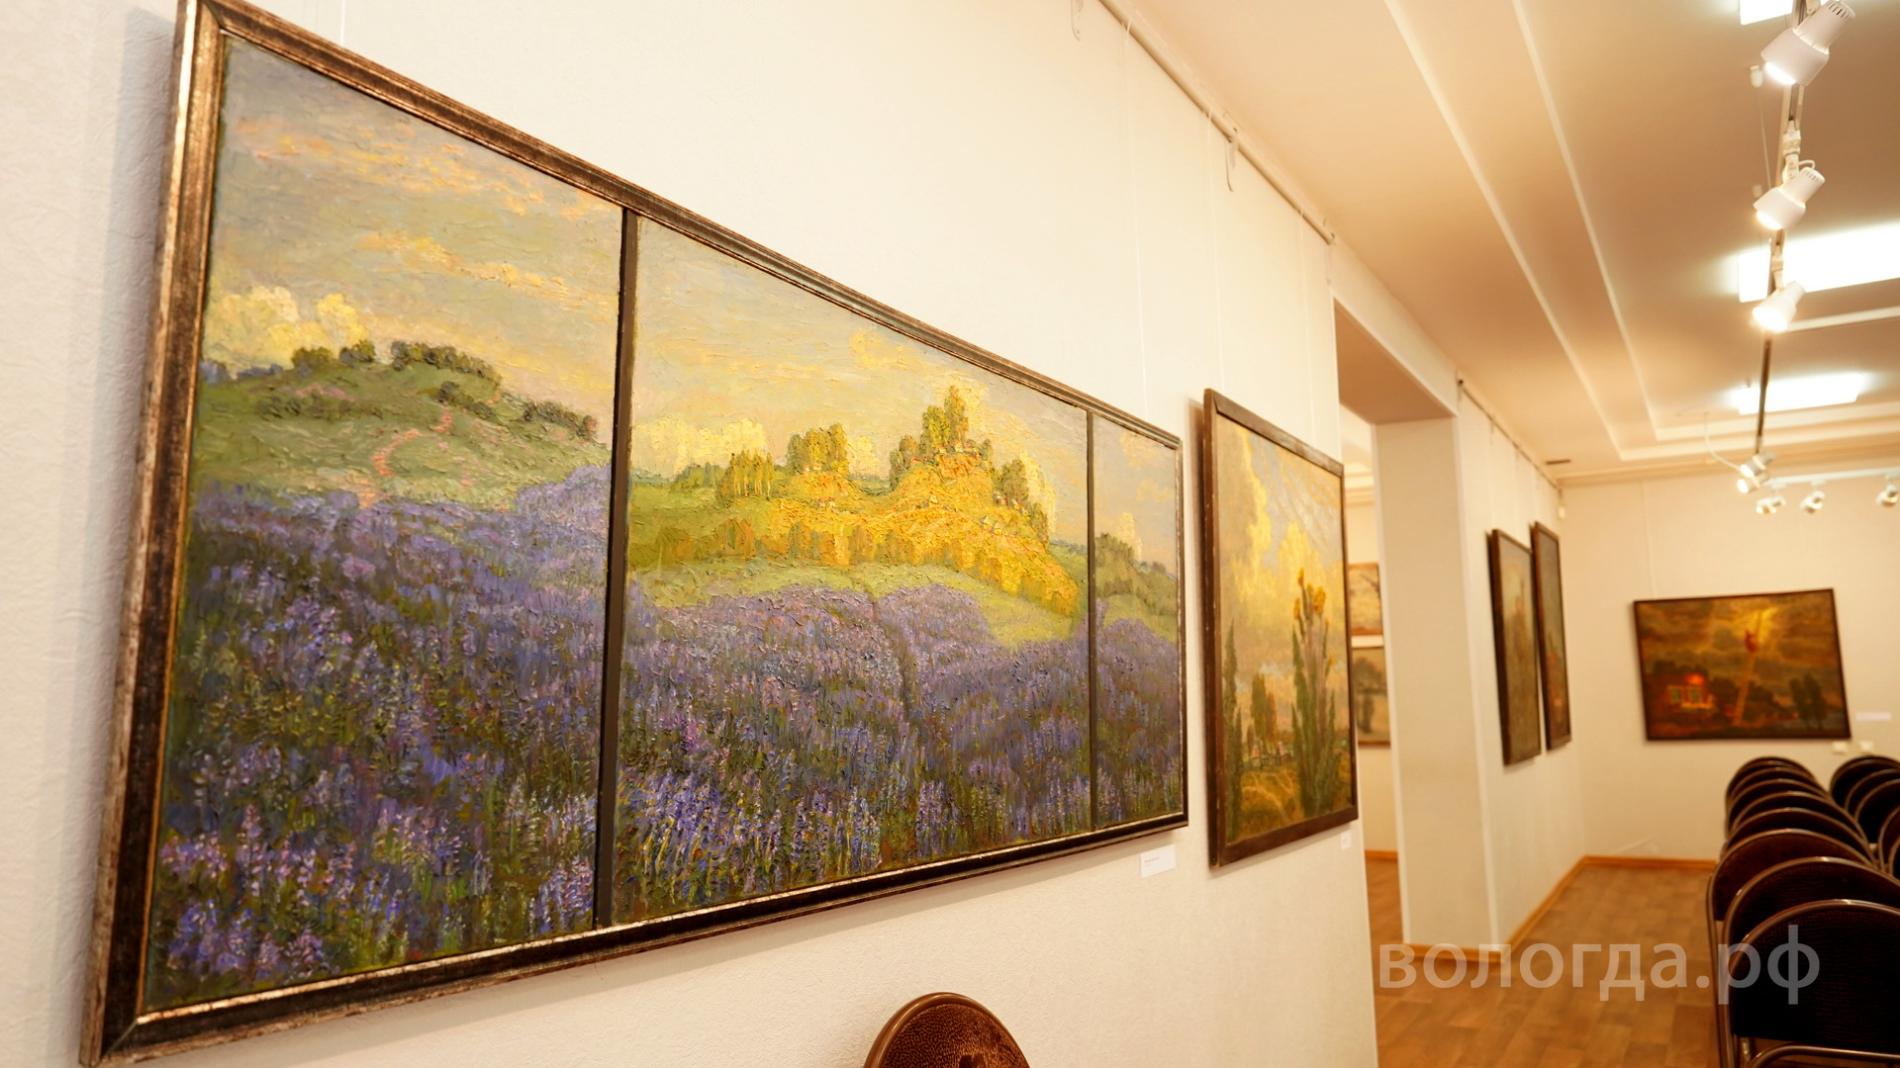 Сегодня в музее Владимира Корбакова открывается выставка «Земное/небесное» (6+)